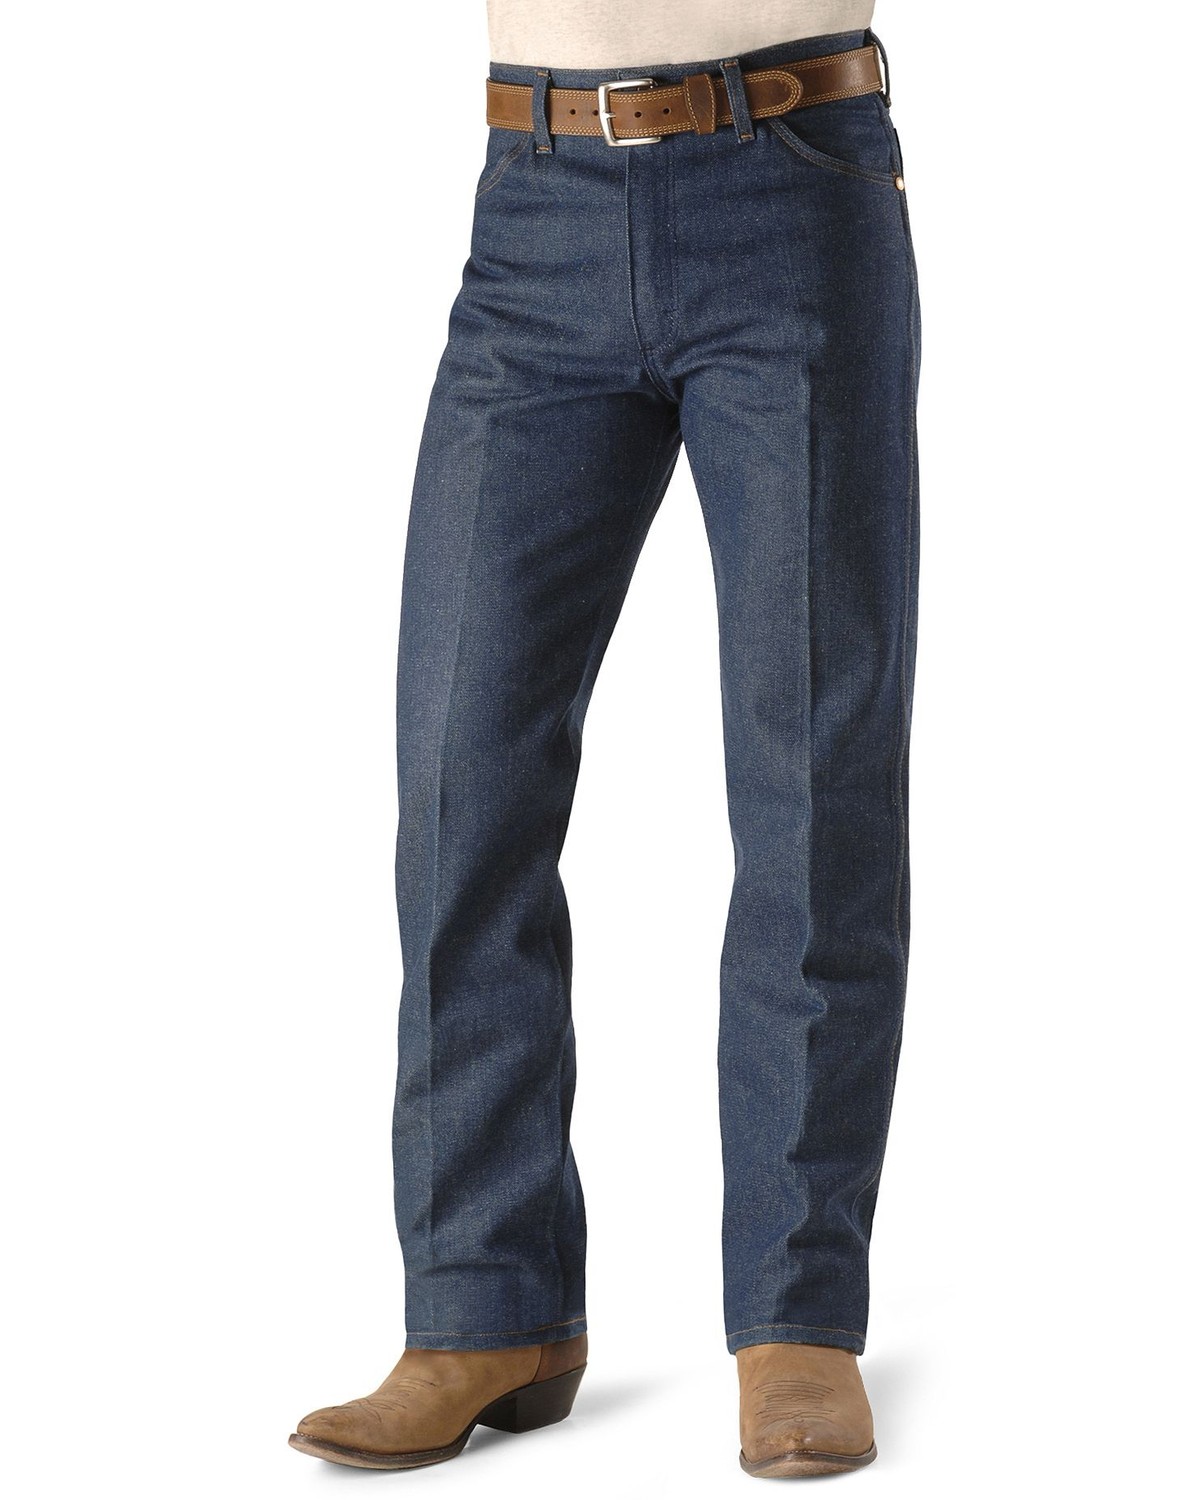 Wrangler 13MWZ Cowboy Cut Rigid Original Fit Jeans - 38